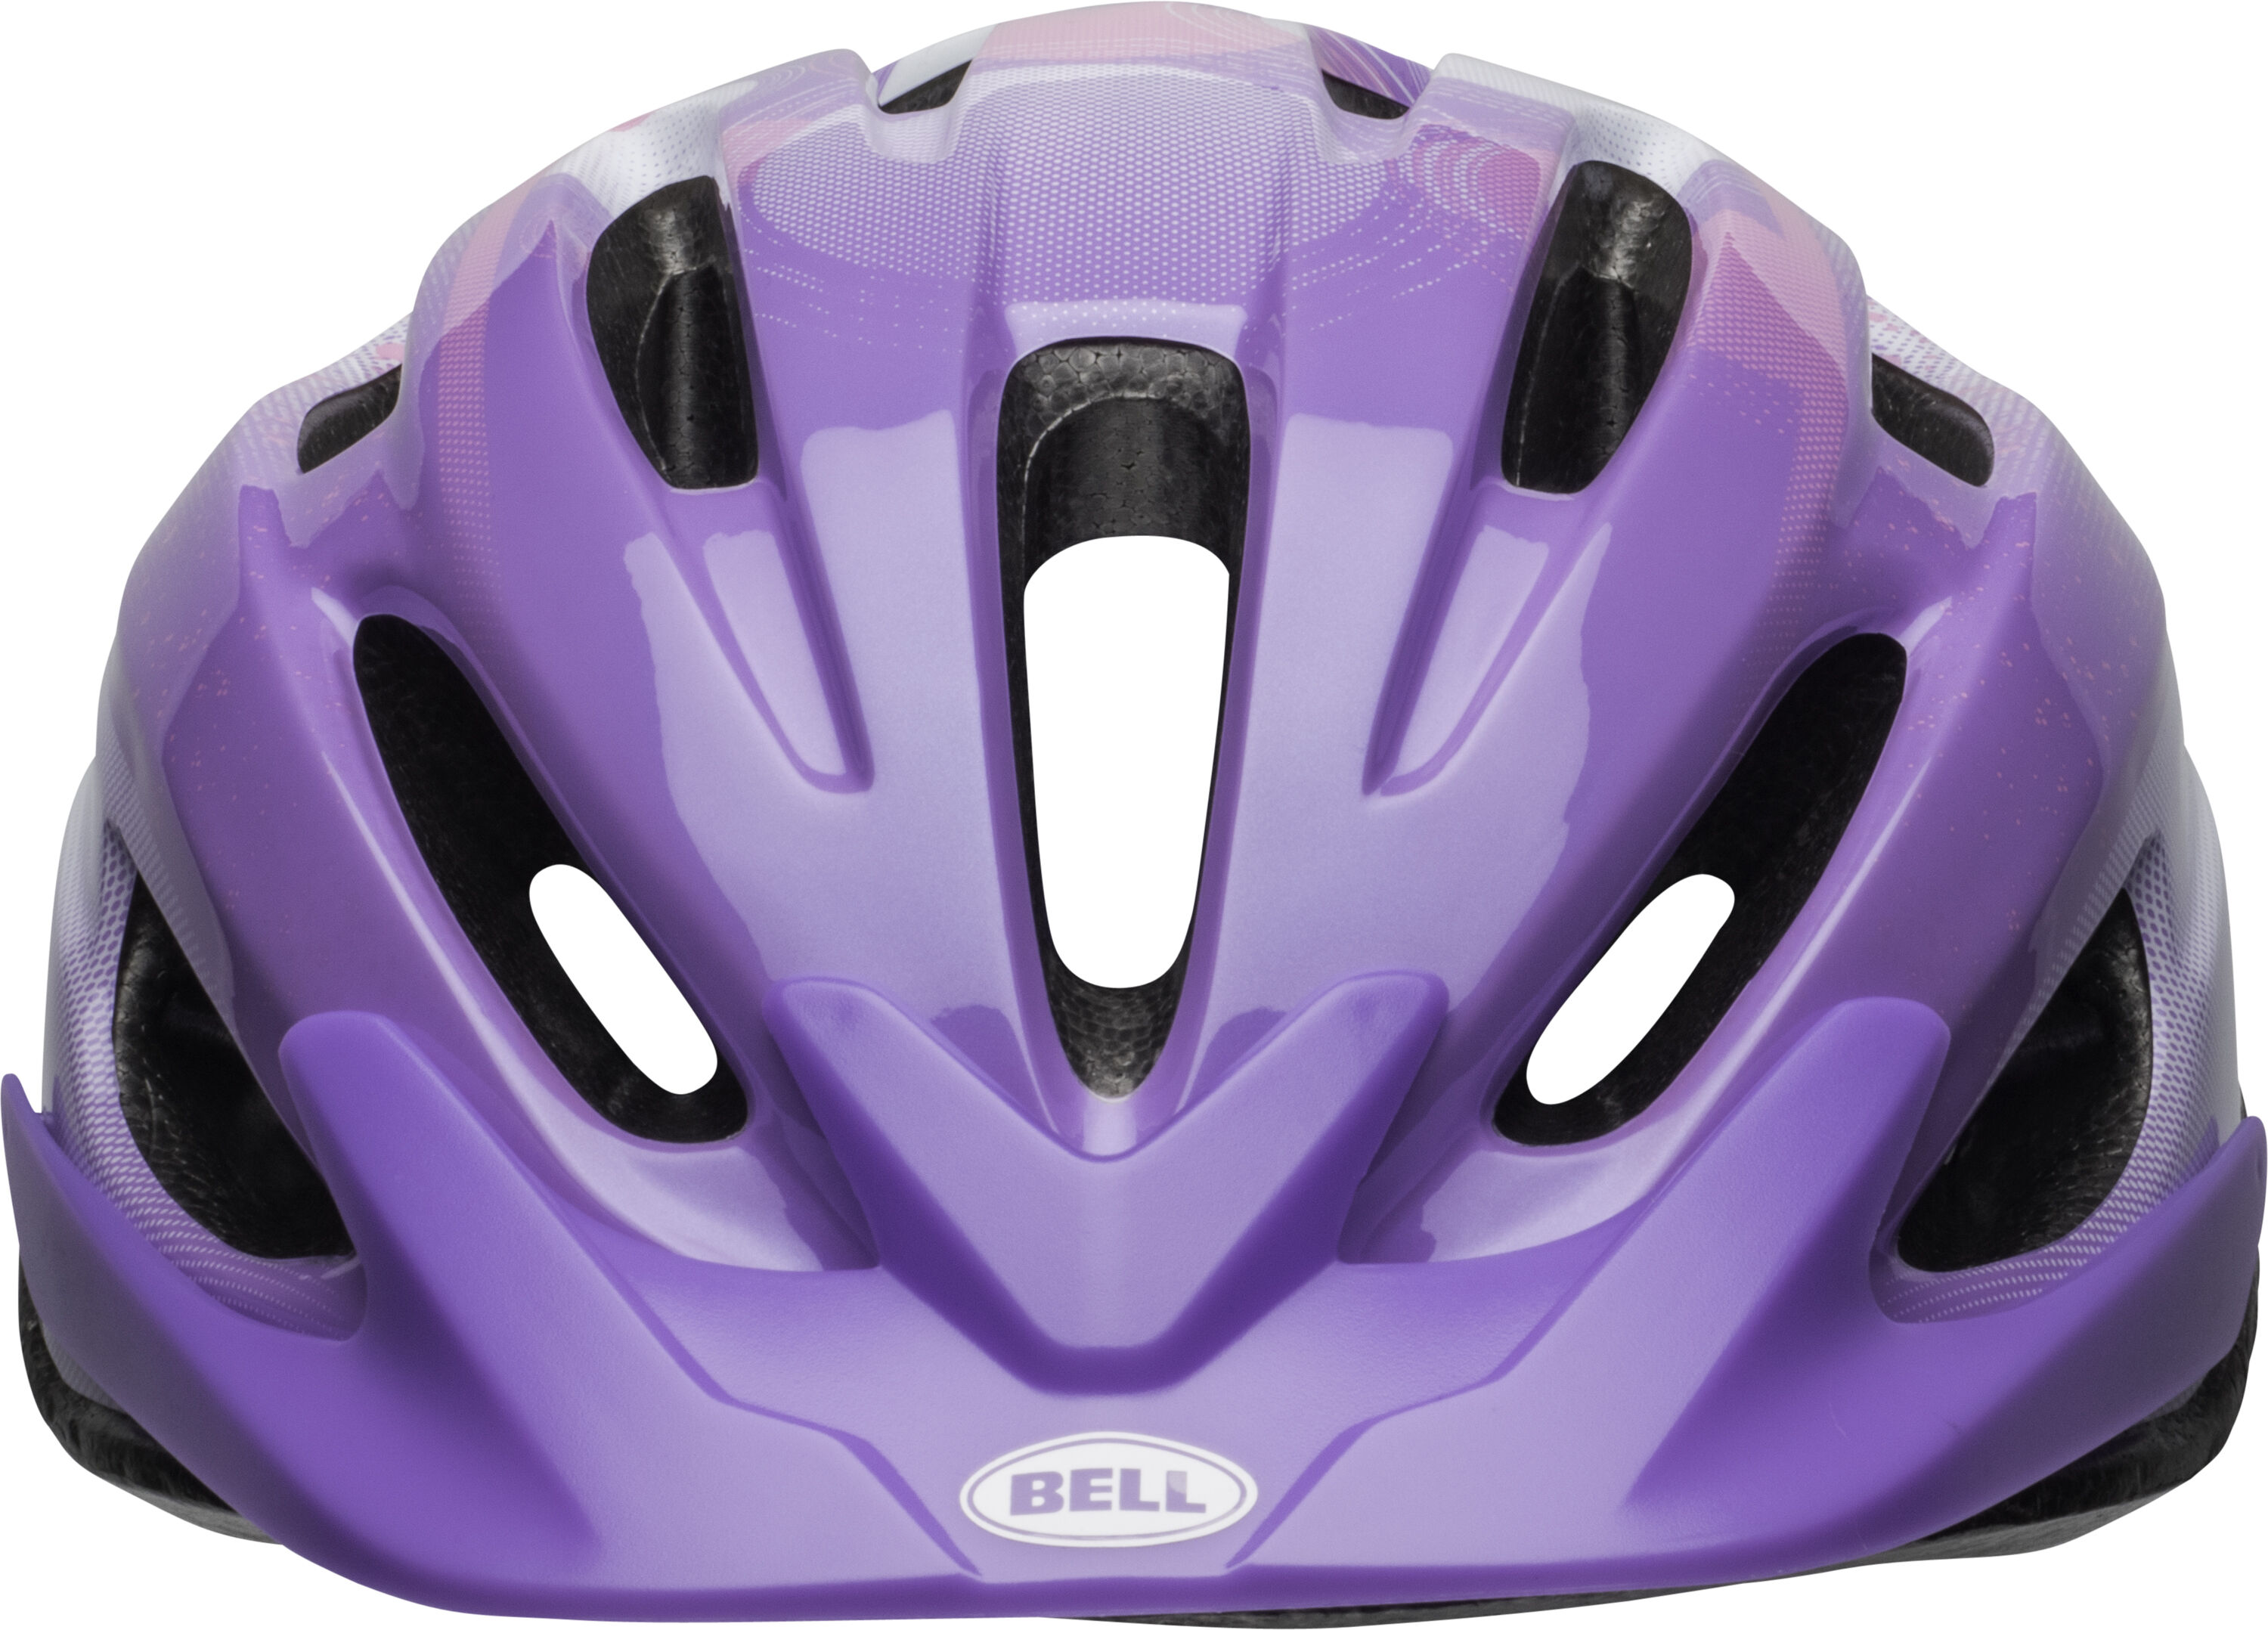 bell childrens helmets